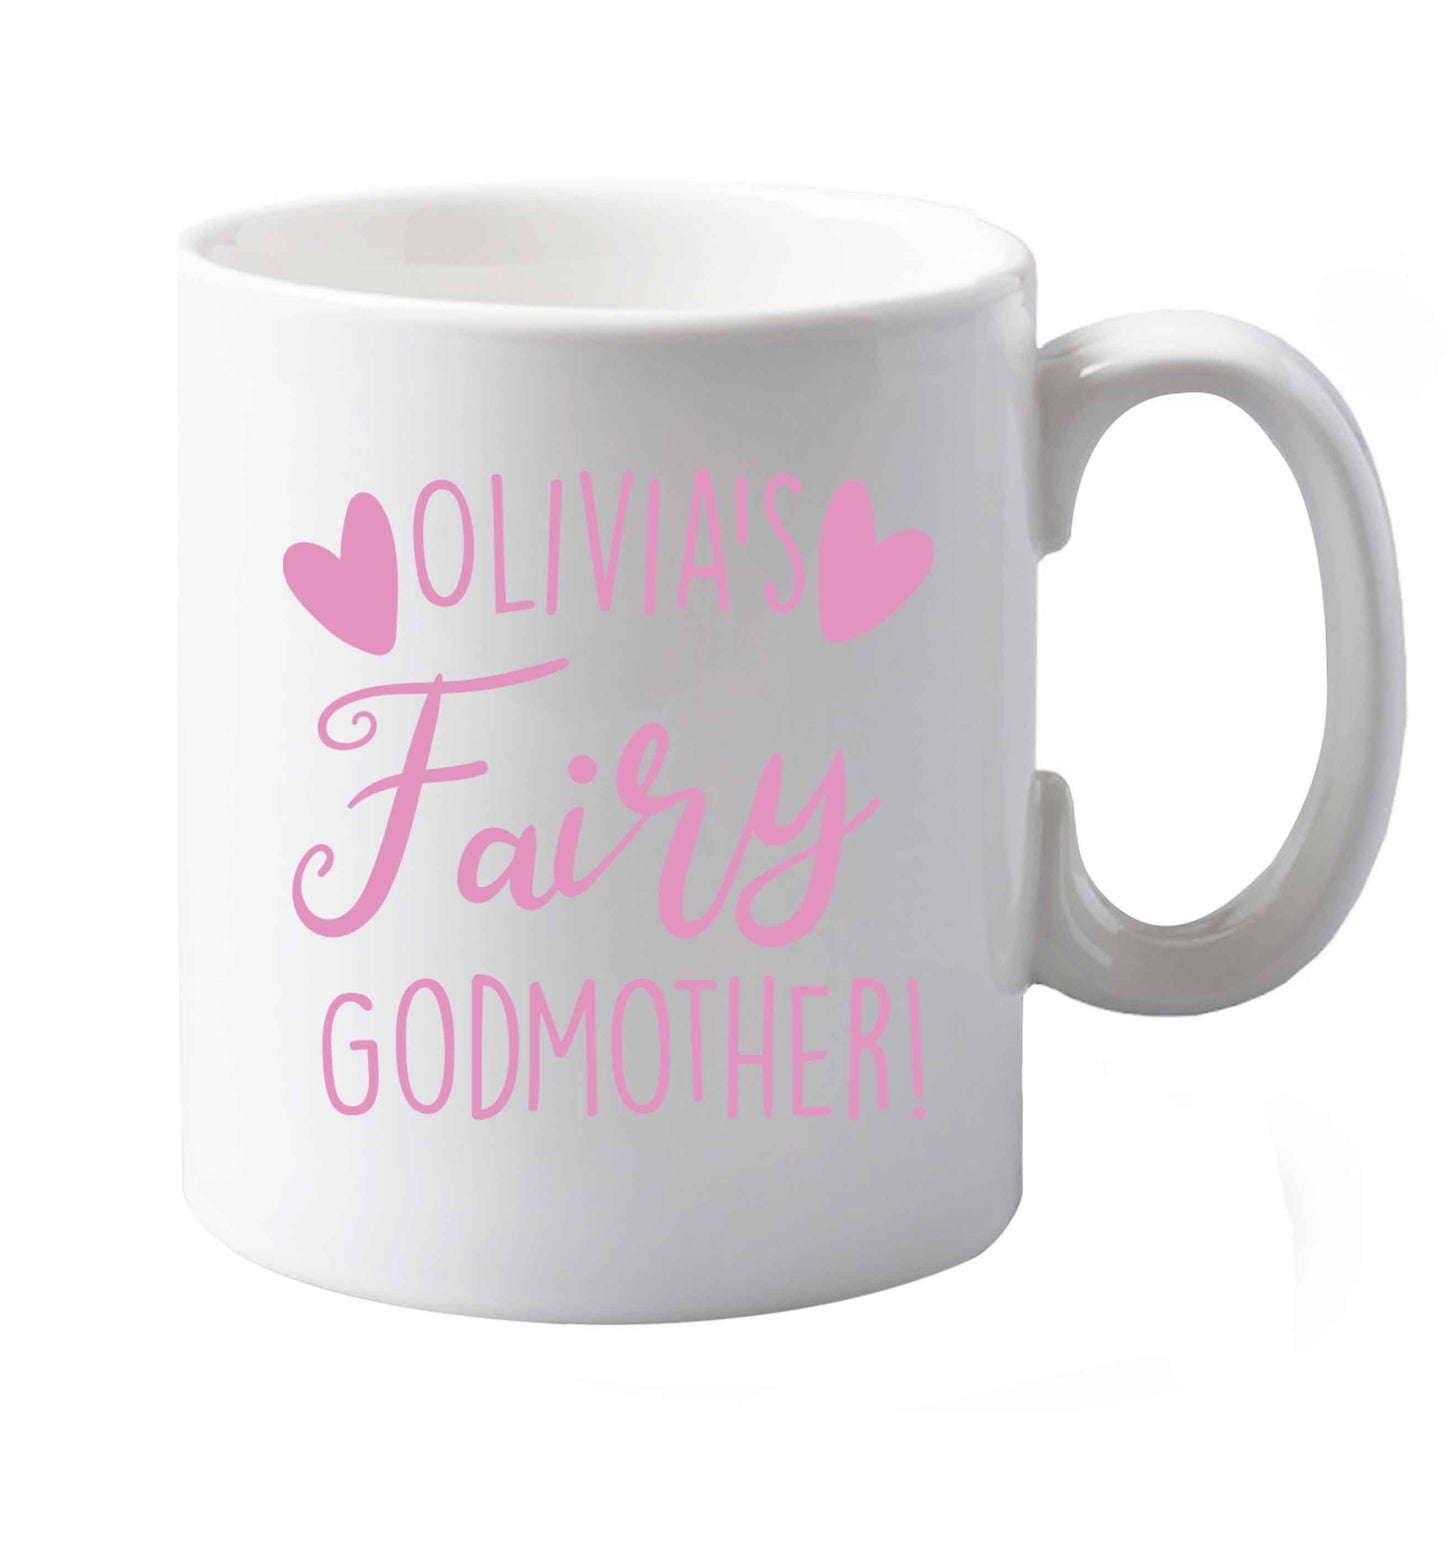 10 oz Personalised fairy Godmother  ceramic mug both sides